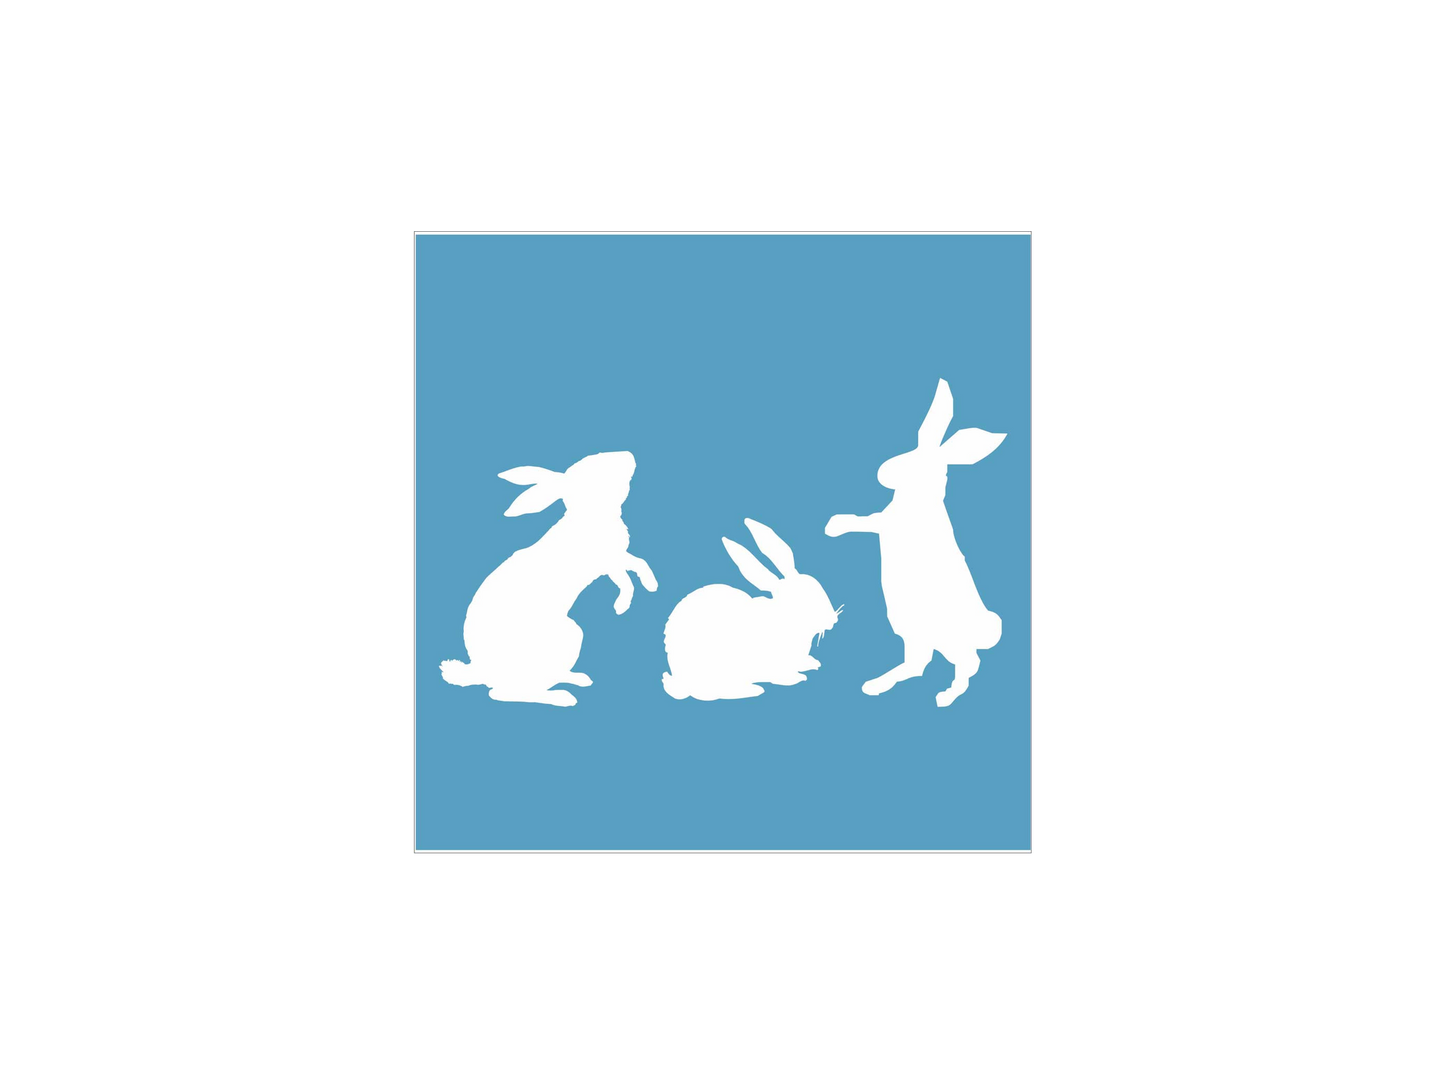 Bunny Rabbit Stencil Set - Set of 3 Rabbits - Superior Stencils